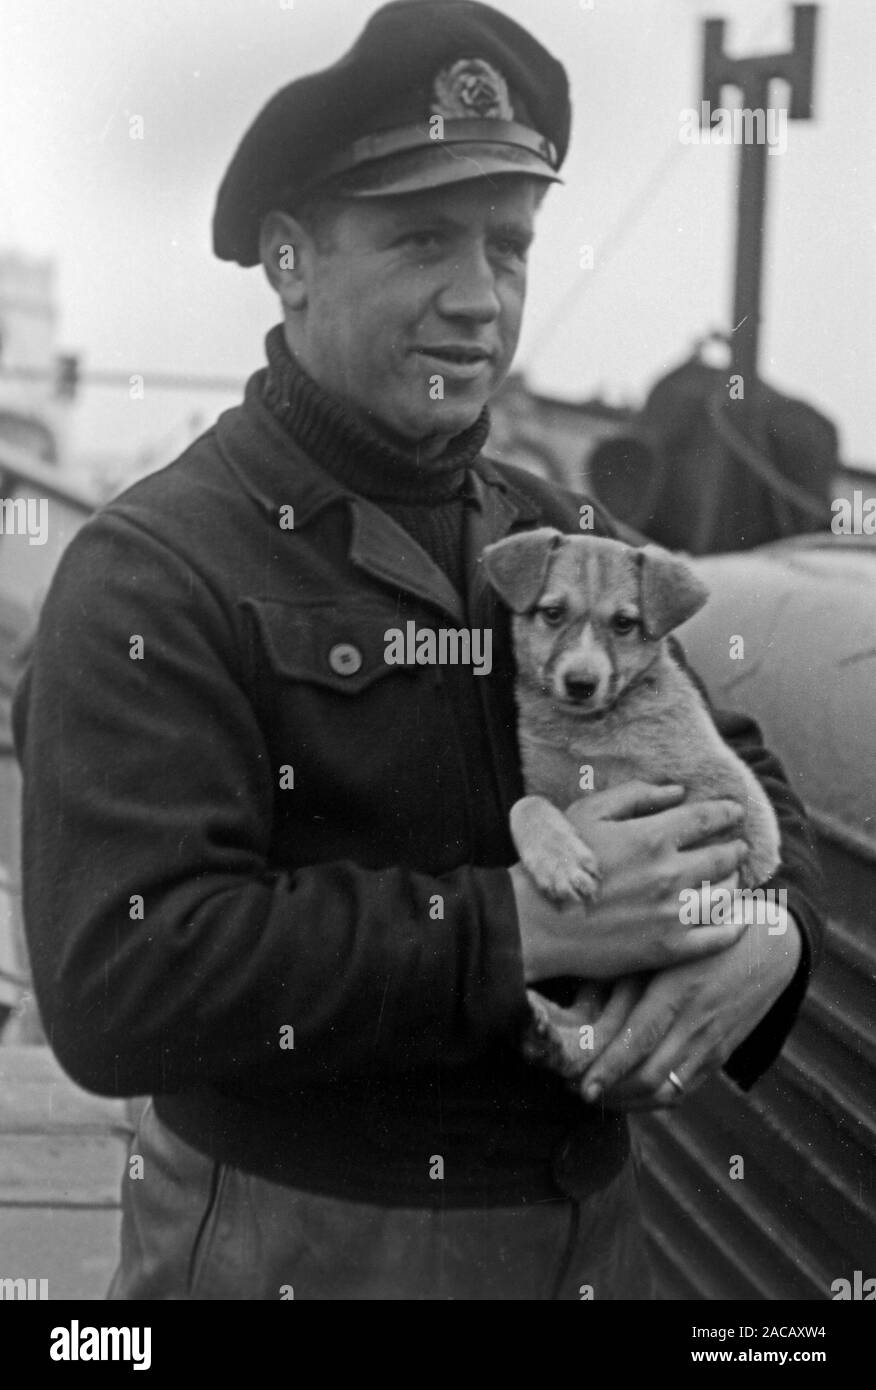 Schiffsarbeiter mit Hund, Emden, Niedersachsen, Deutschland, 1950. Ship worker with dog, Emden, Lower Saxony, Germany, 1950s. Stock Photo